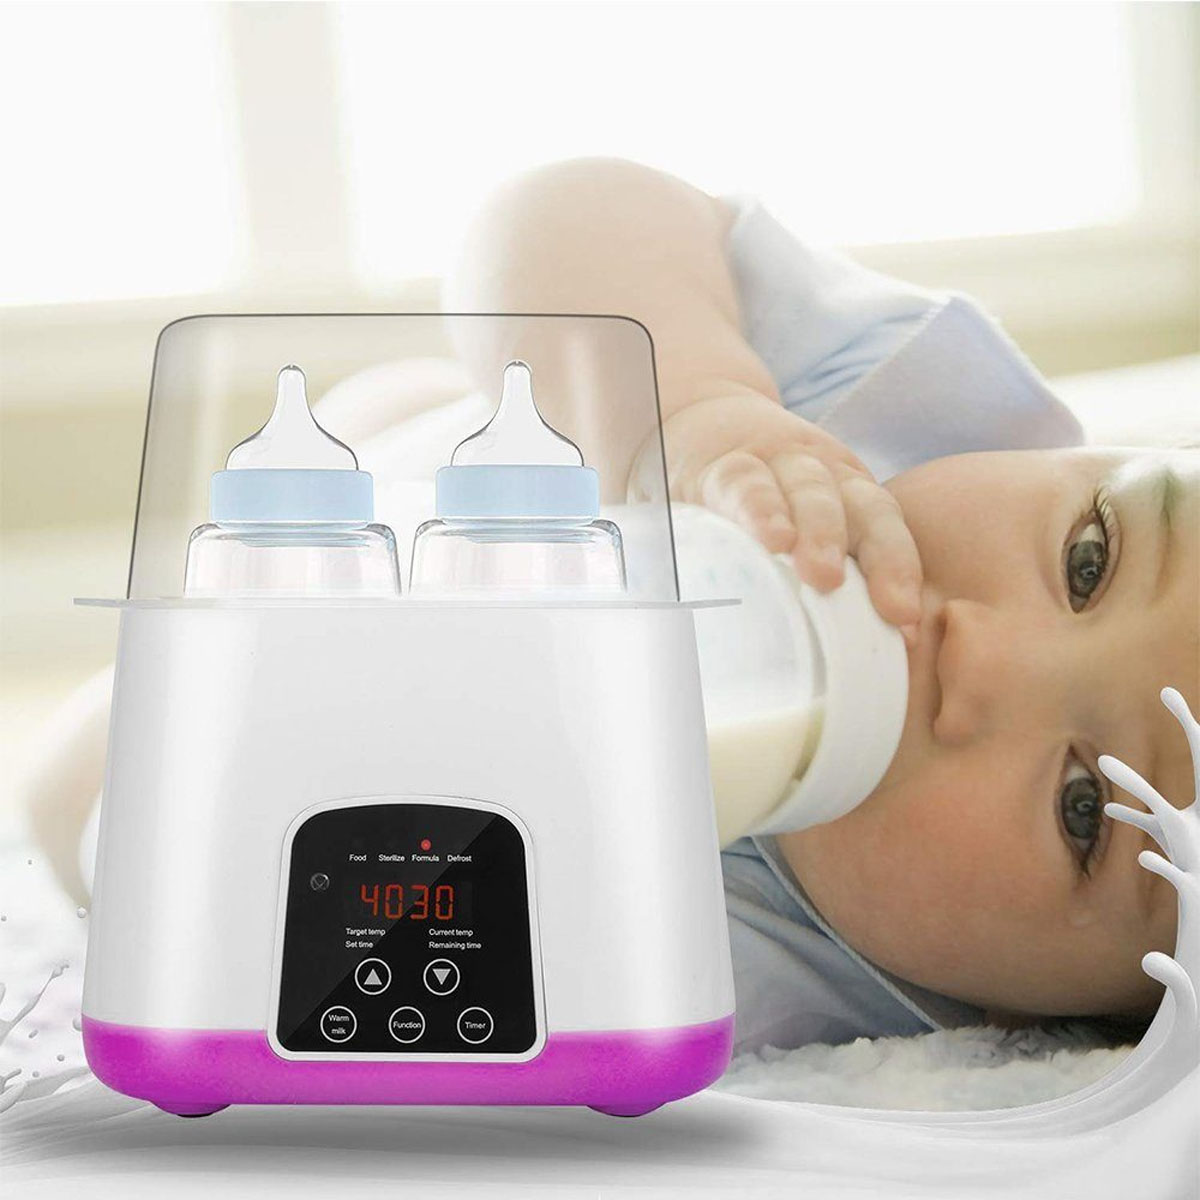 LED-Display, Temperatur 24h, 6 1 Babykostwärmer BABY JA in Weiß Konstante Milcherwärmer, in Babyflaschenwärmer